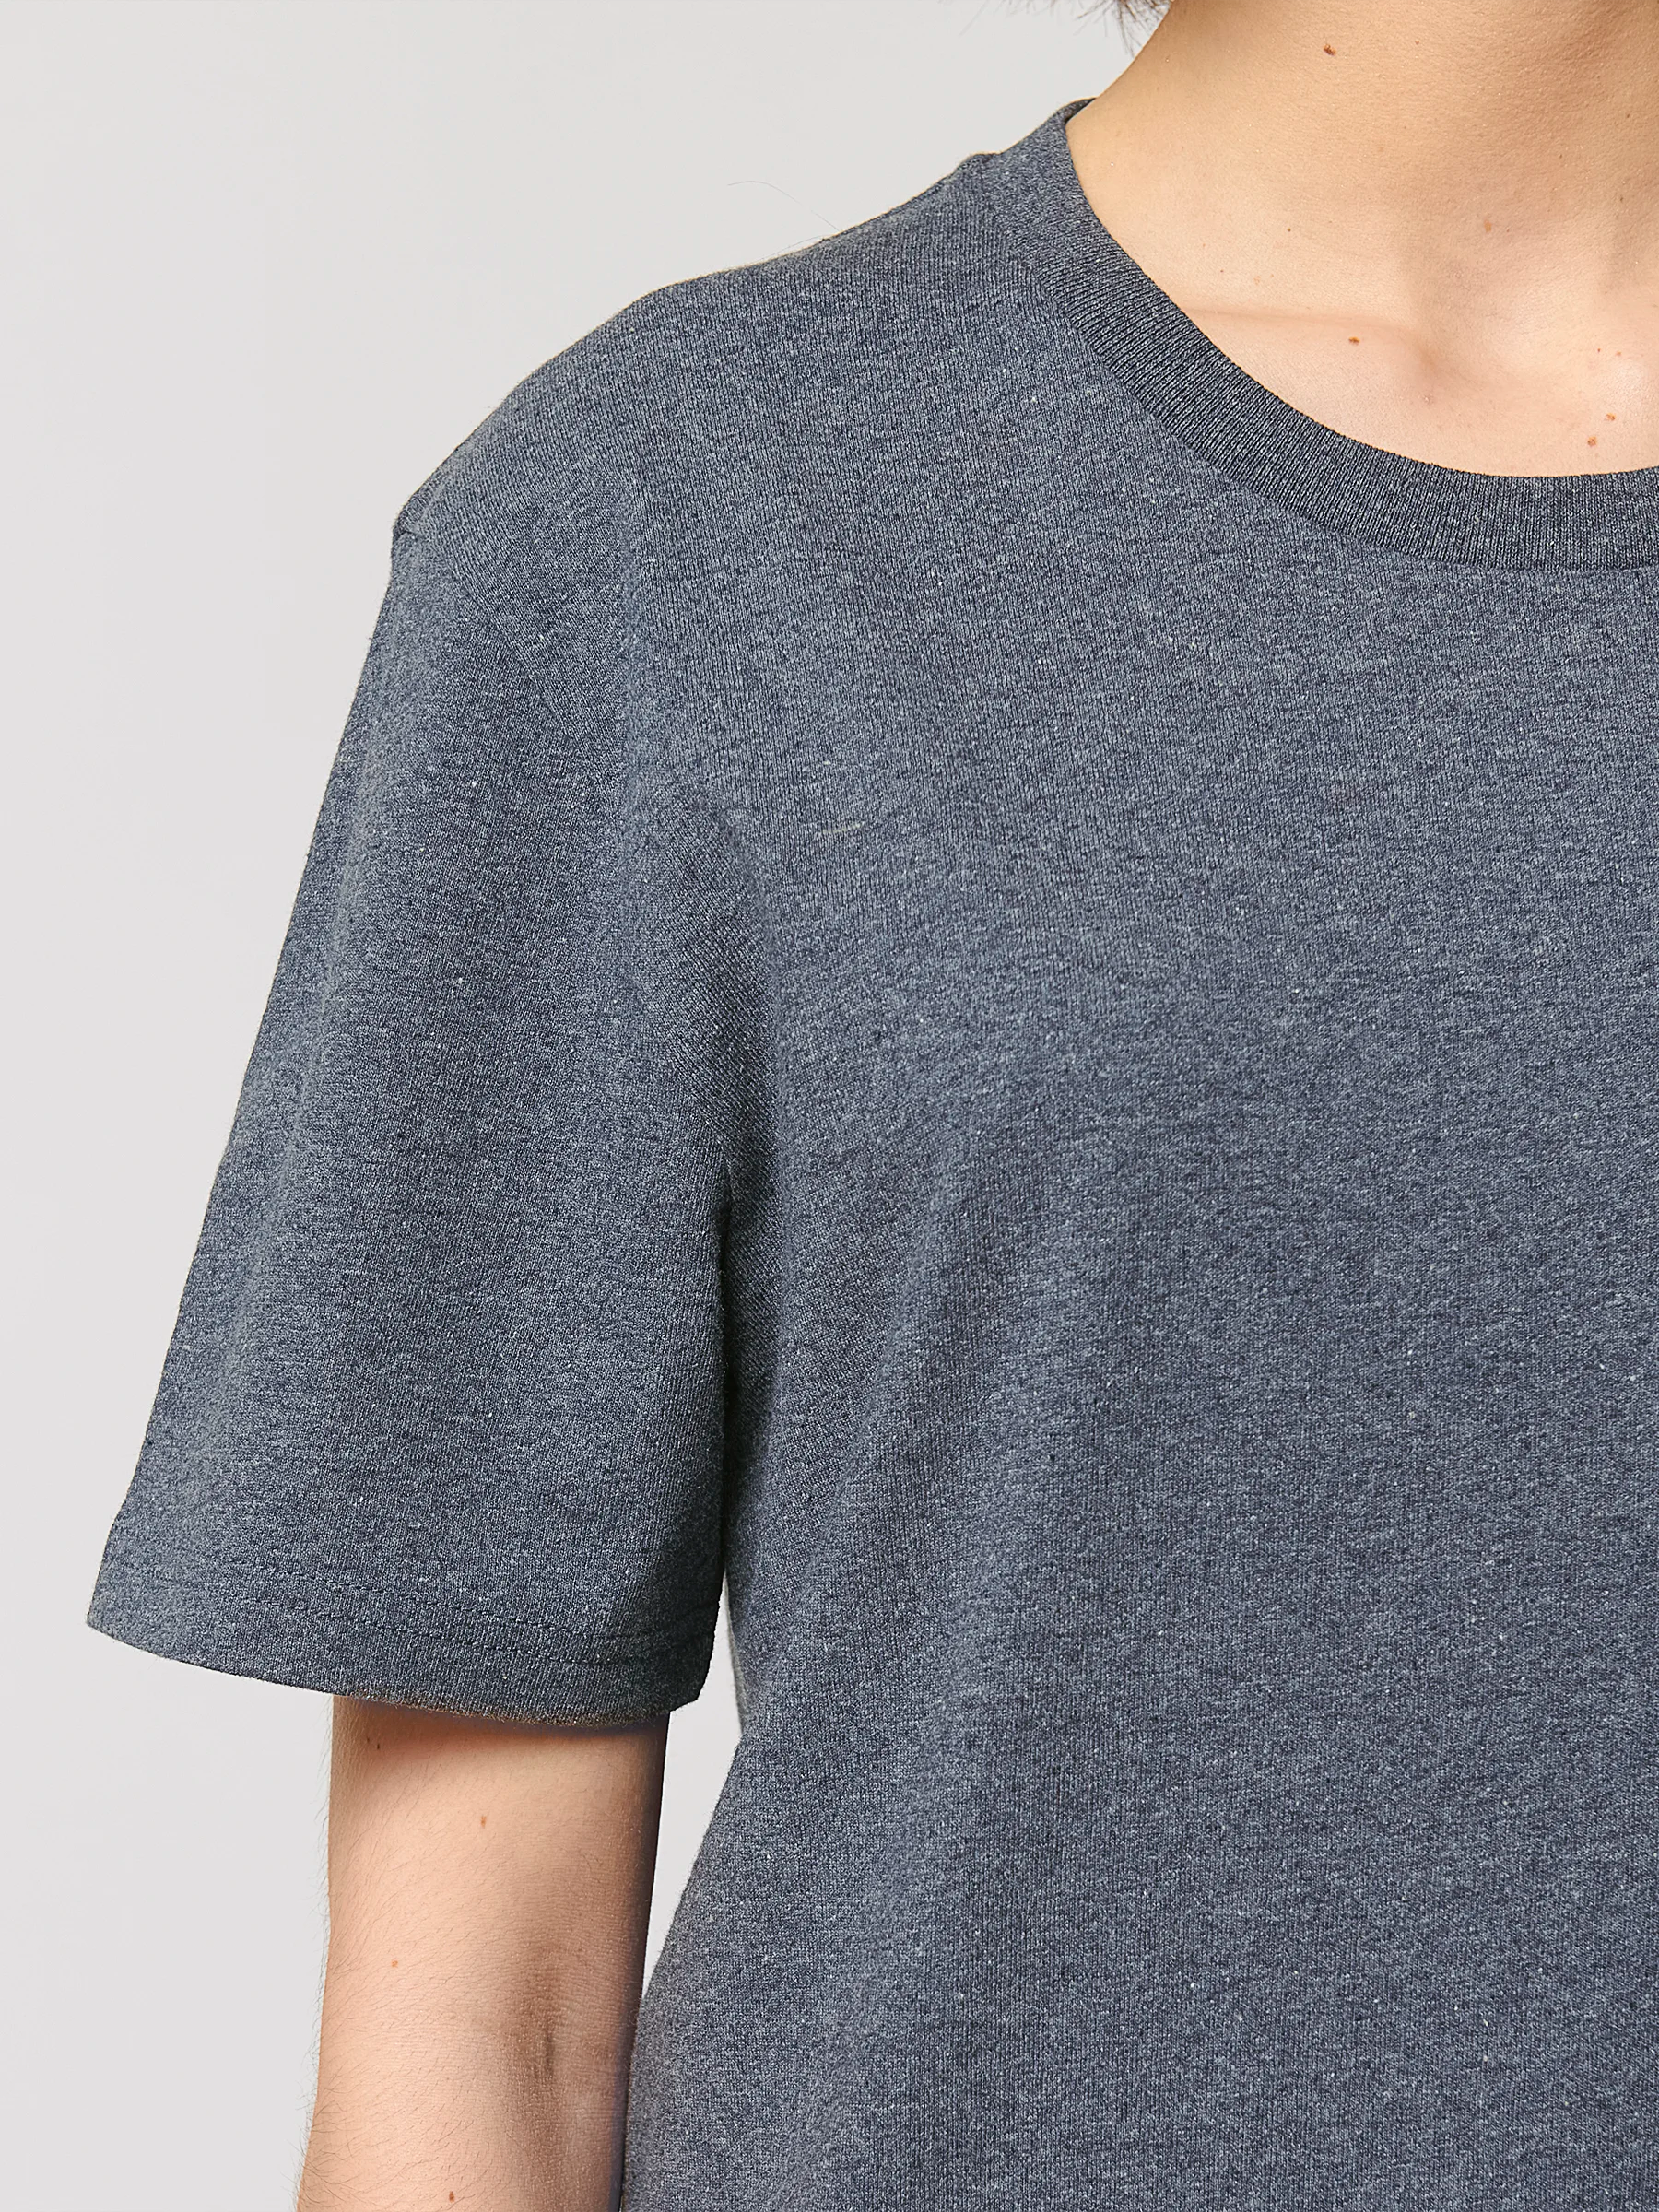 HEITER & LÄSSIG - RE-Navy T-Shirt - aus recycelter Baumwolle